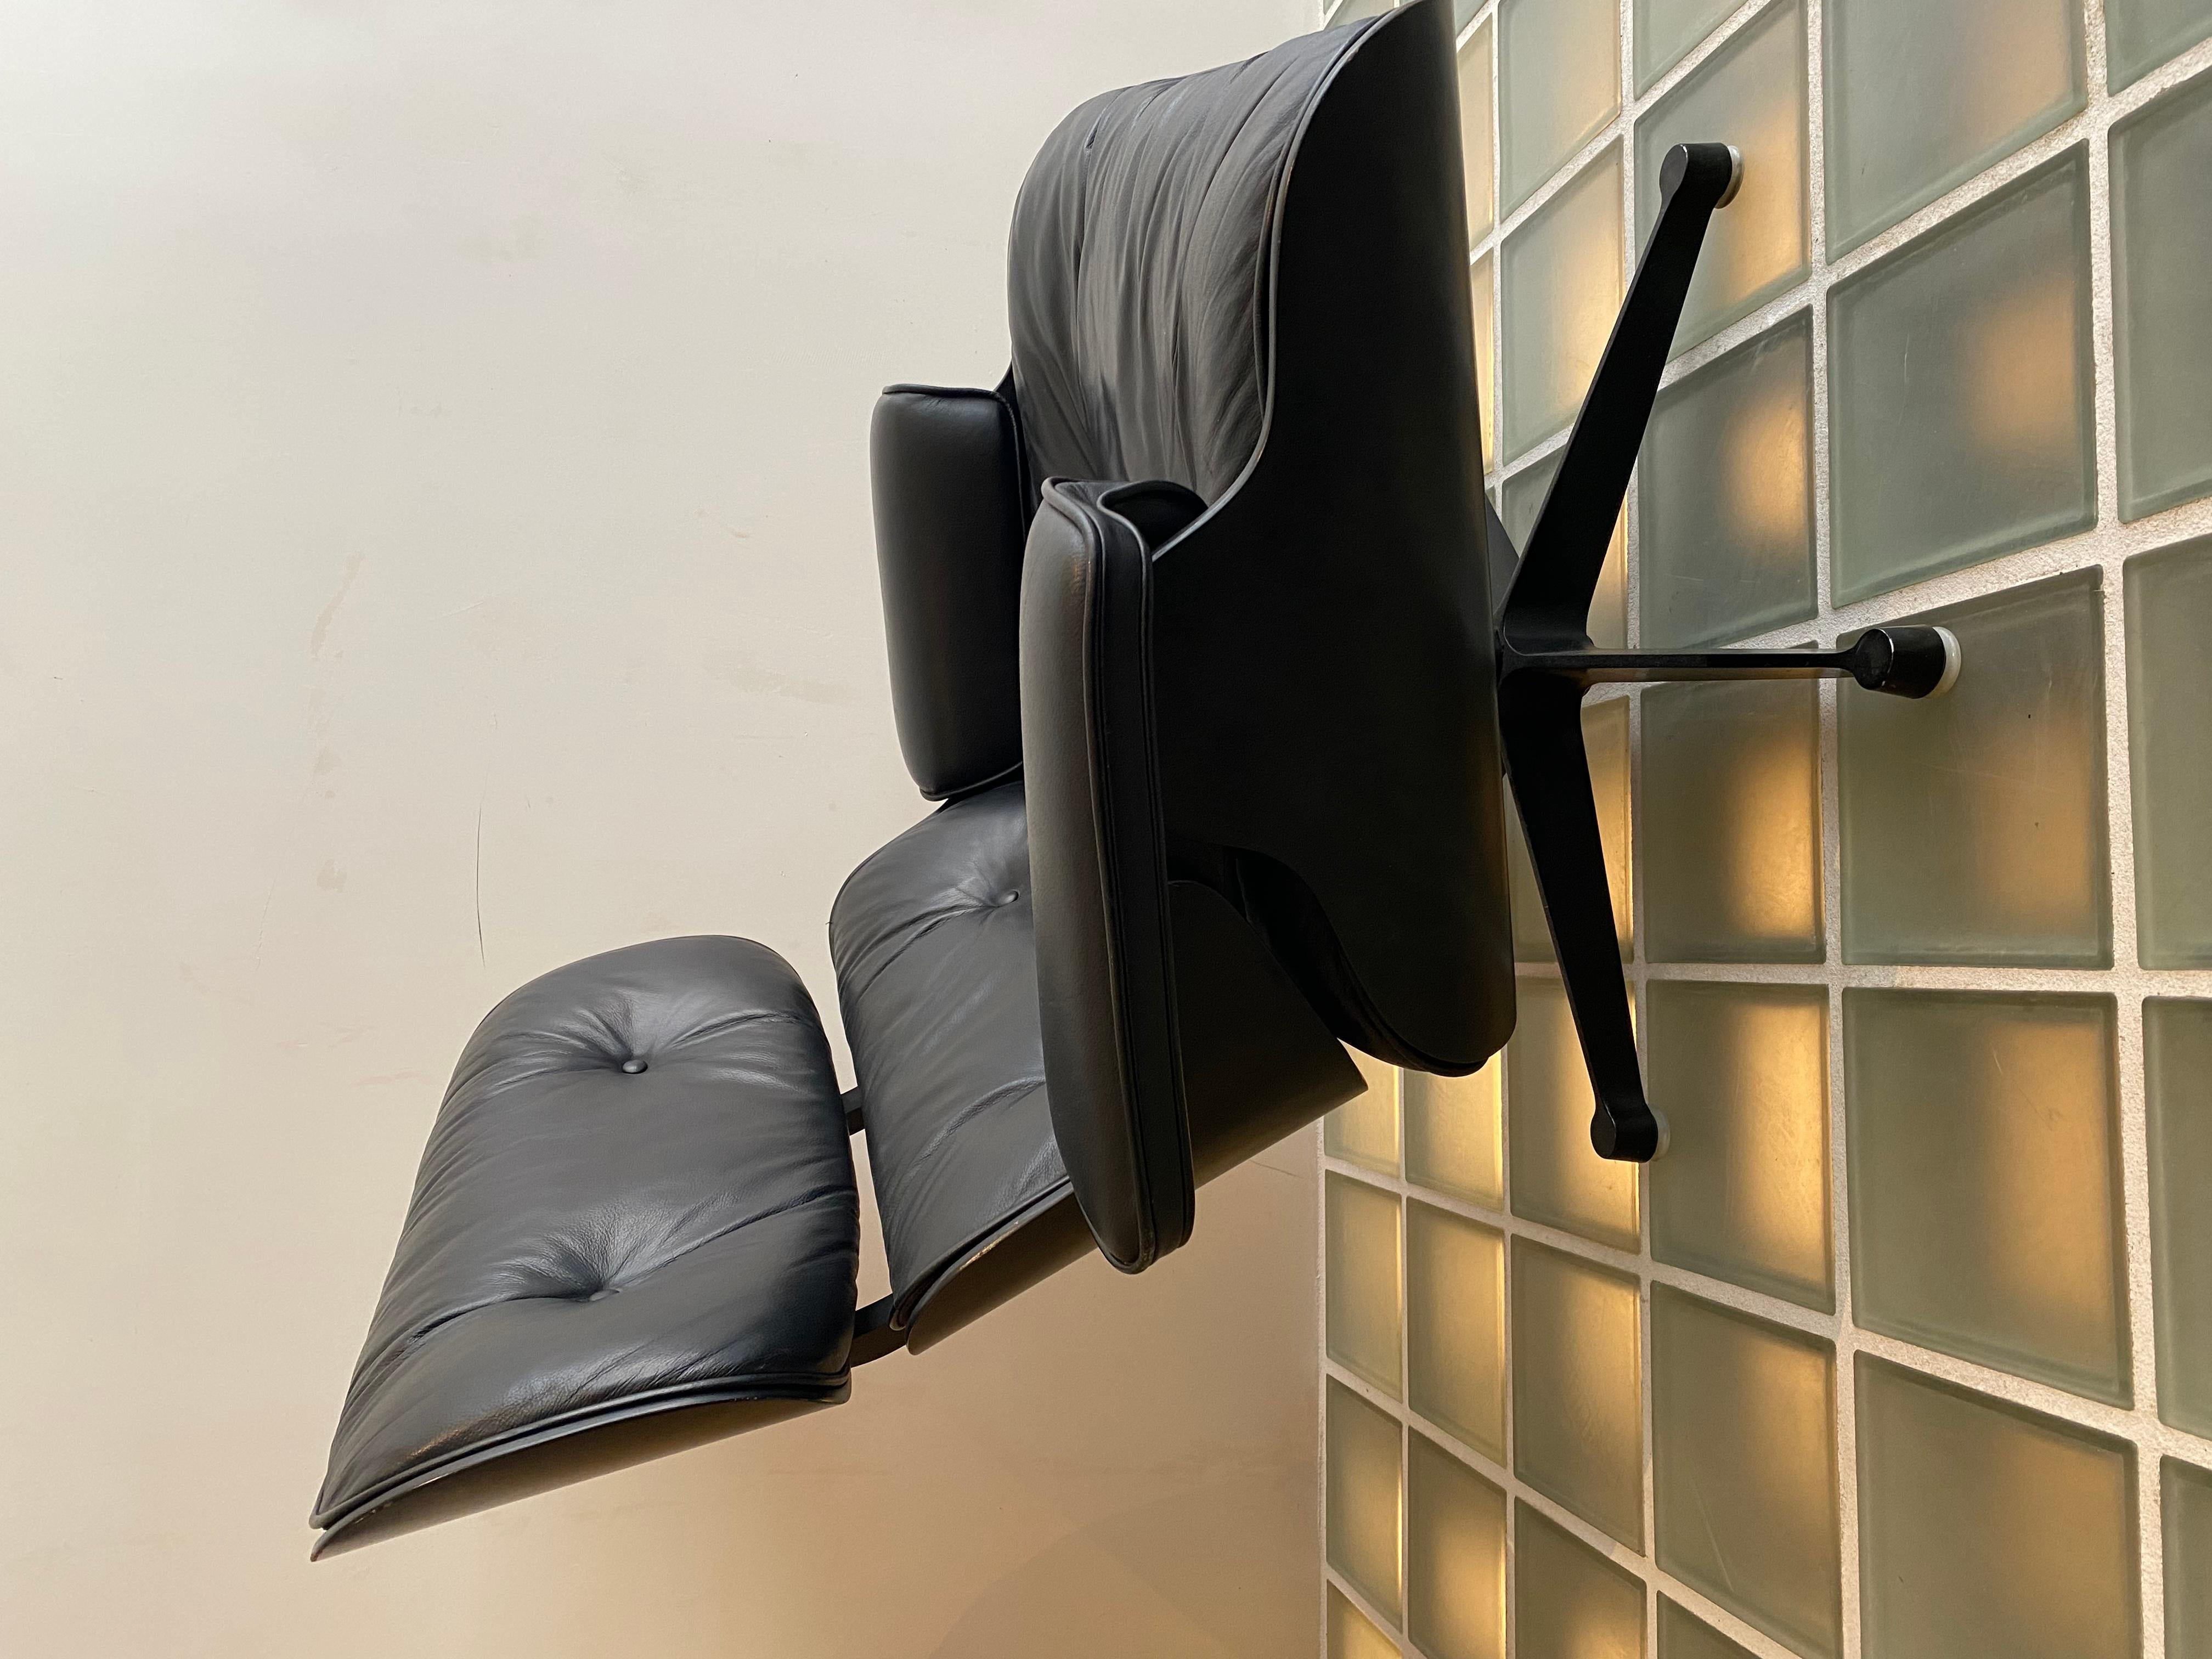 Sessel.
Charles & ray eames, 1956 für herman miller.

Der Stuhl besteht aus drei gebogenen, mit Furnier überzogenen Sperrholzschalen: der Kopfstütze, der Rückenlehne und dem Sitz.

Die Schalen und die Sitzkissen haben im Wesentlichen die